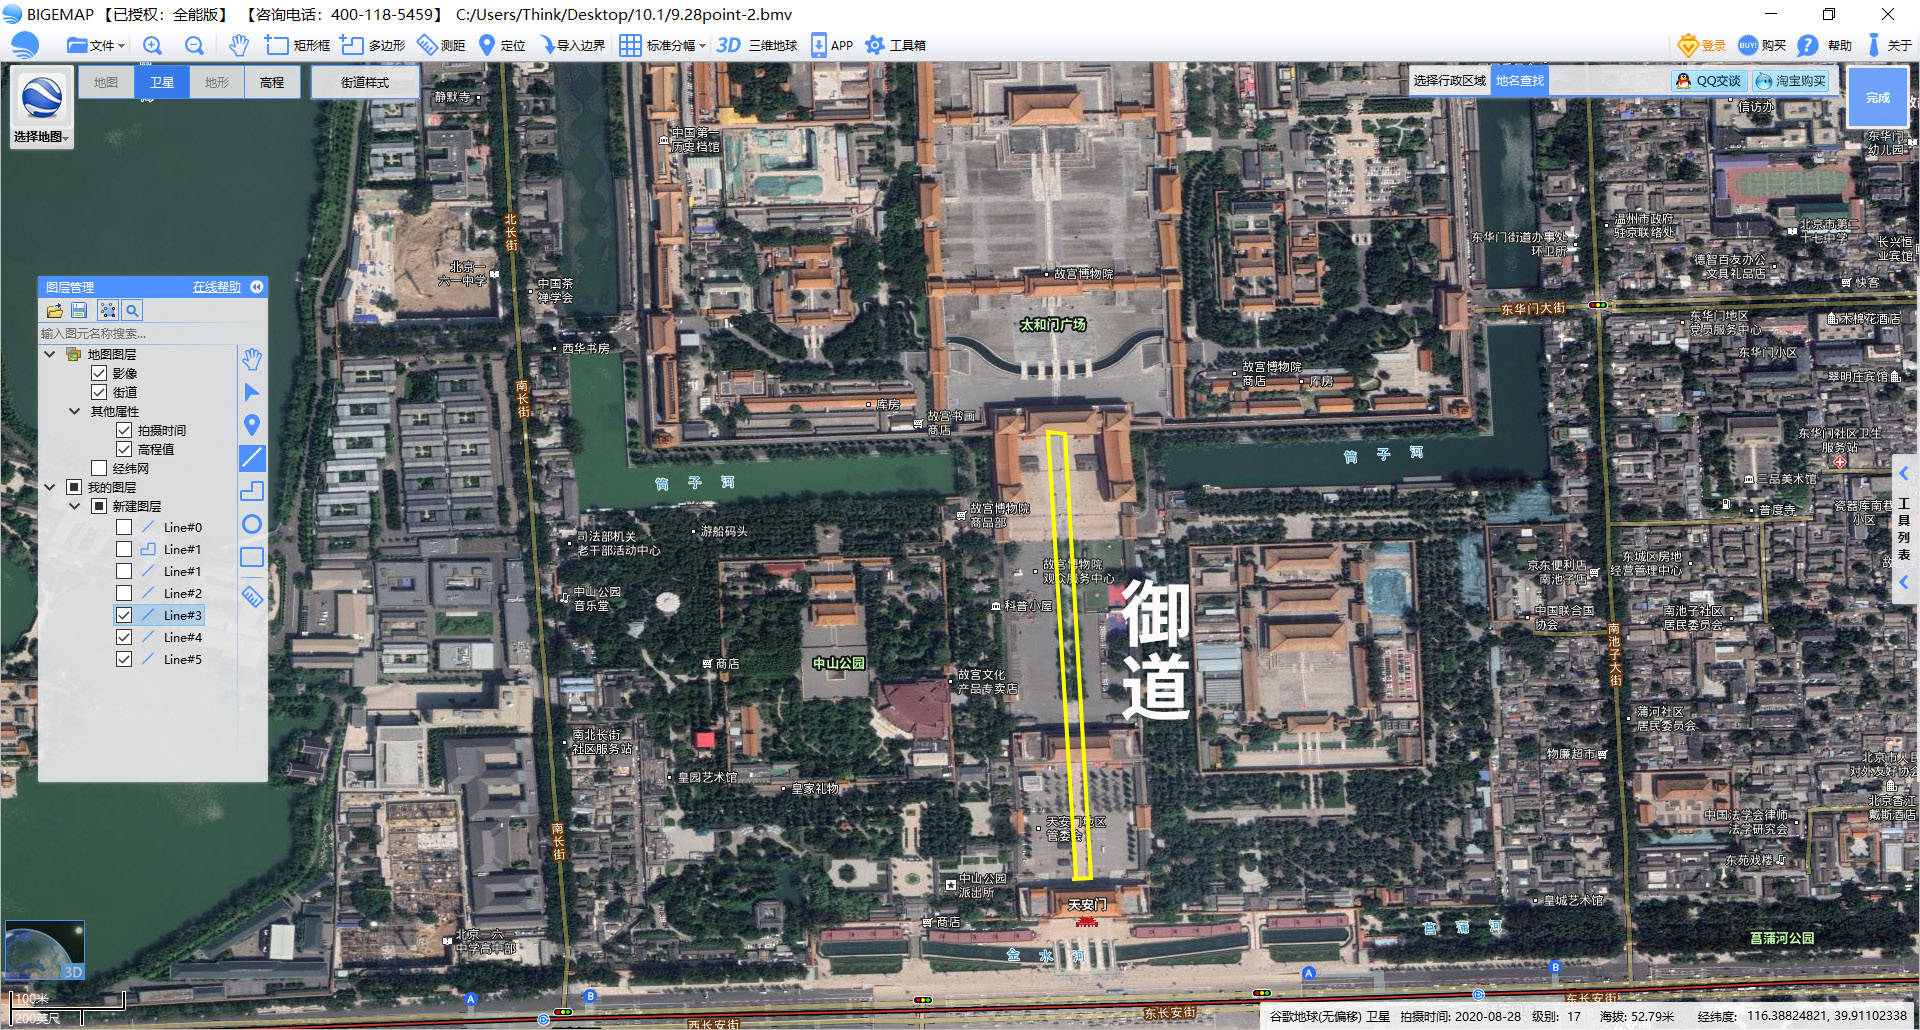 从卫星地图宏观了解六百周年的北京故宫